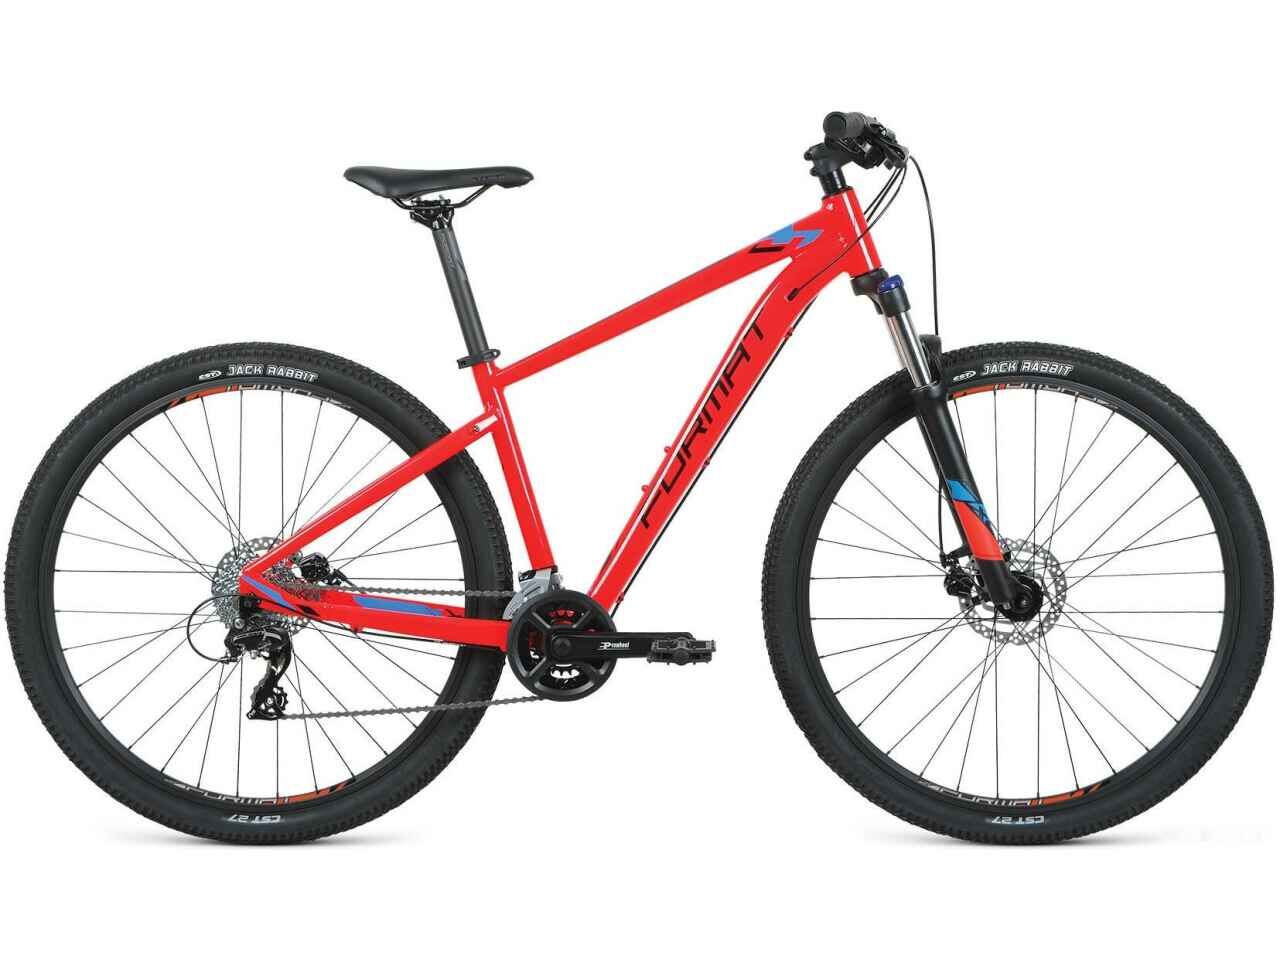 Велосипед Format 1414 29 M 2021 (красный)